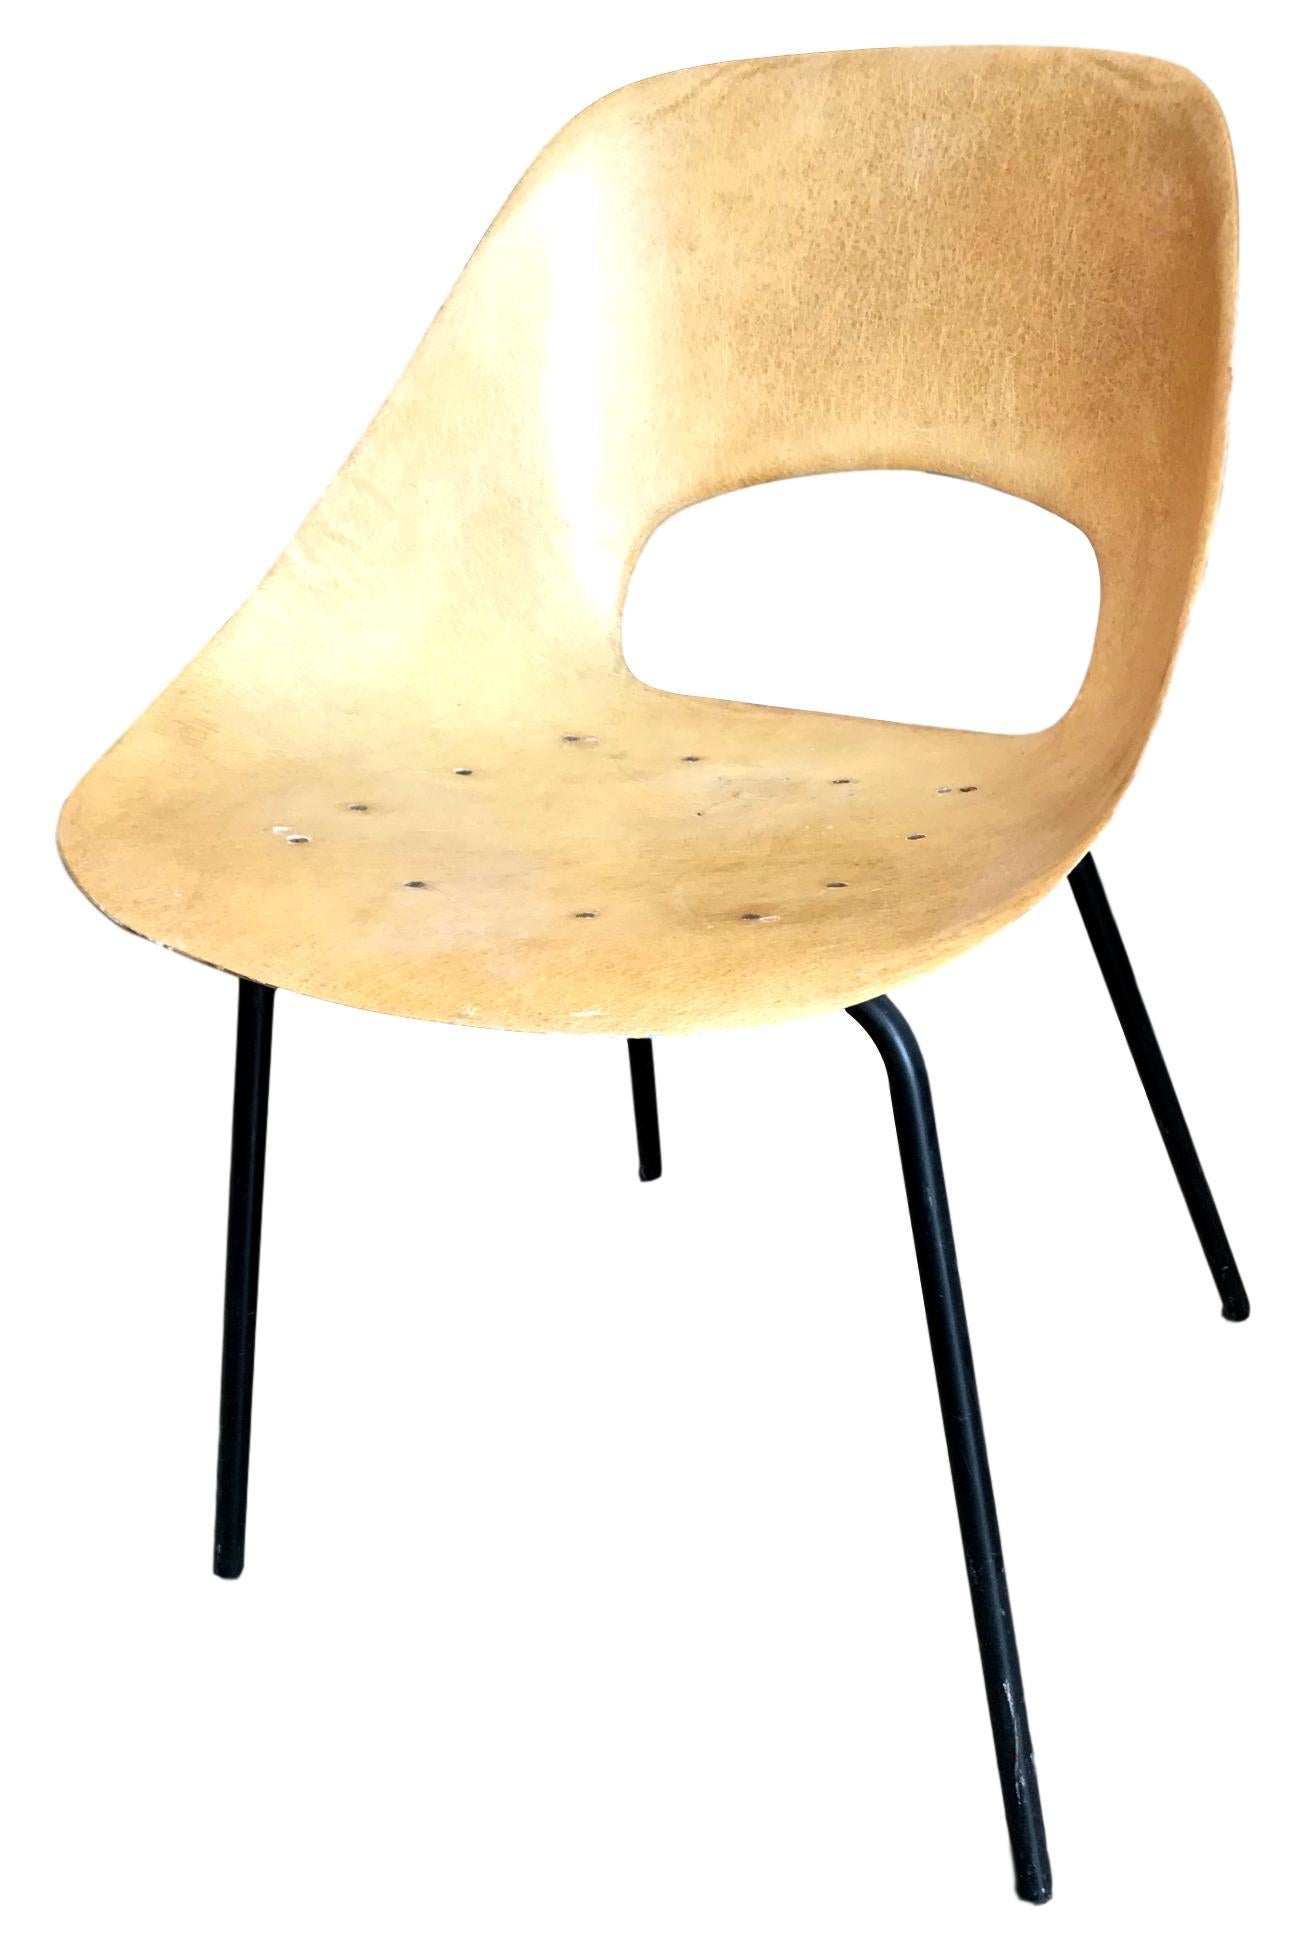 Wunderschöner Stuhl aus Fiberglas von Pierre Guariche. Der Rahmen aus cremefarbenem Fiberglas steht auf vier Eisenbeinen. Toller Vintage-Zustand und schönes Design. Großartiges eigenständiges Werk. Fantastisches Stück Sammlerdesign.


